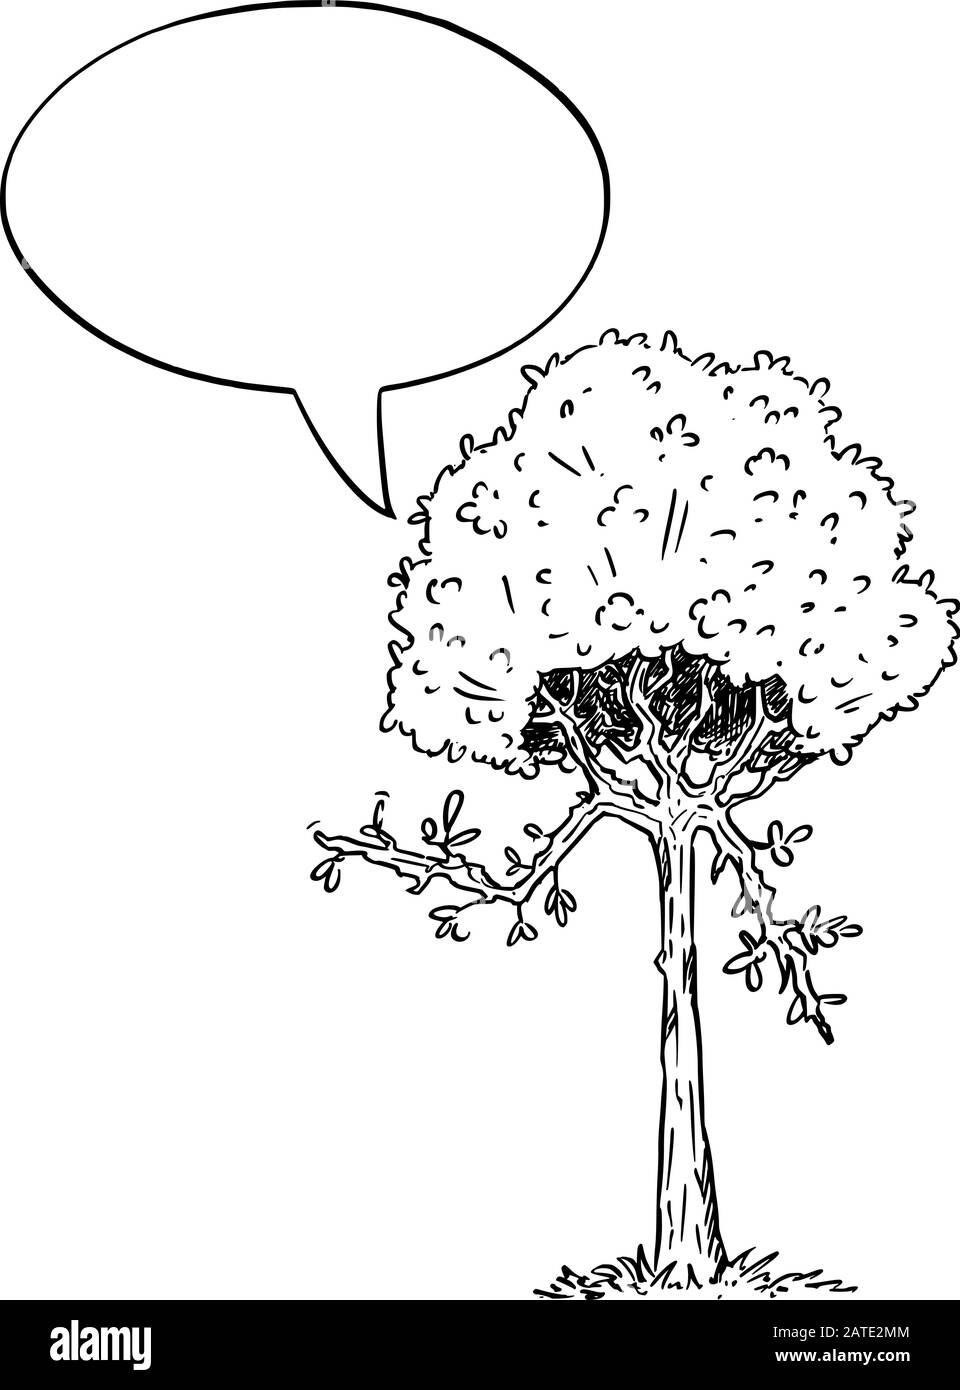 Illustrazione vettoriale del carattere di pianta dell'albero di fioritura del cartone animato con la bolla del parlato. Ecologia o natura pubblicità o disegno di vendita. Illustrazione Vettoriale